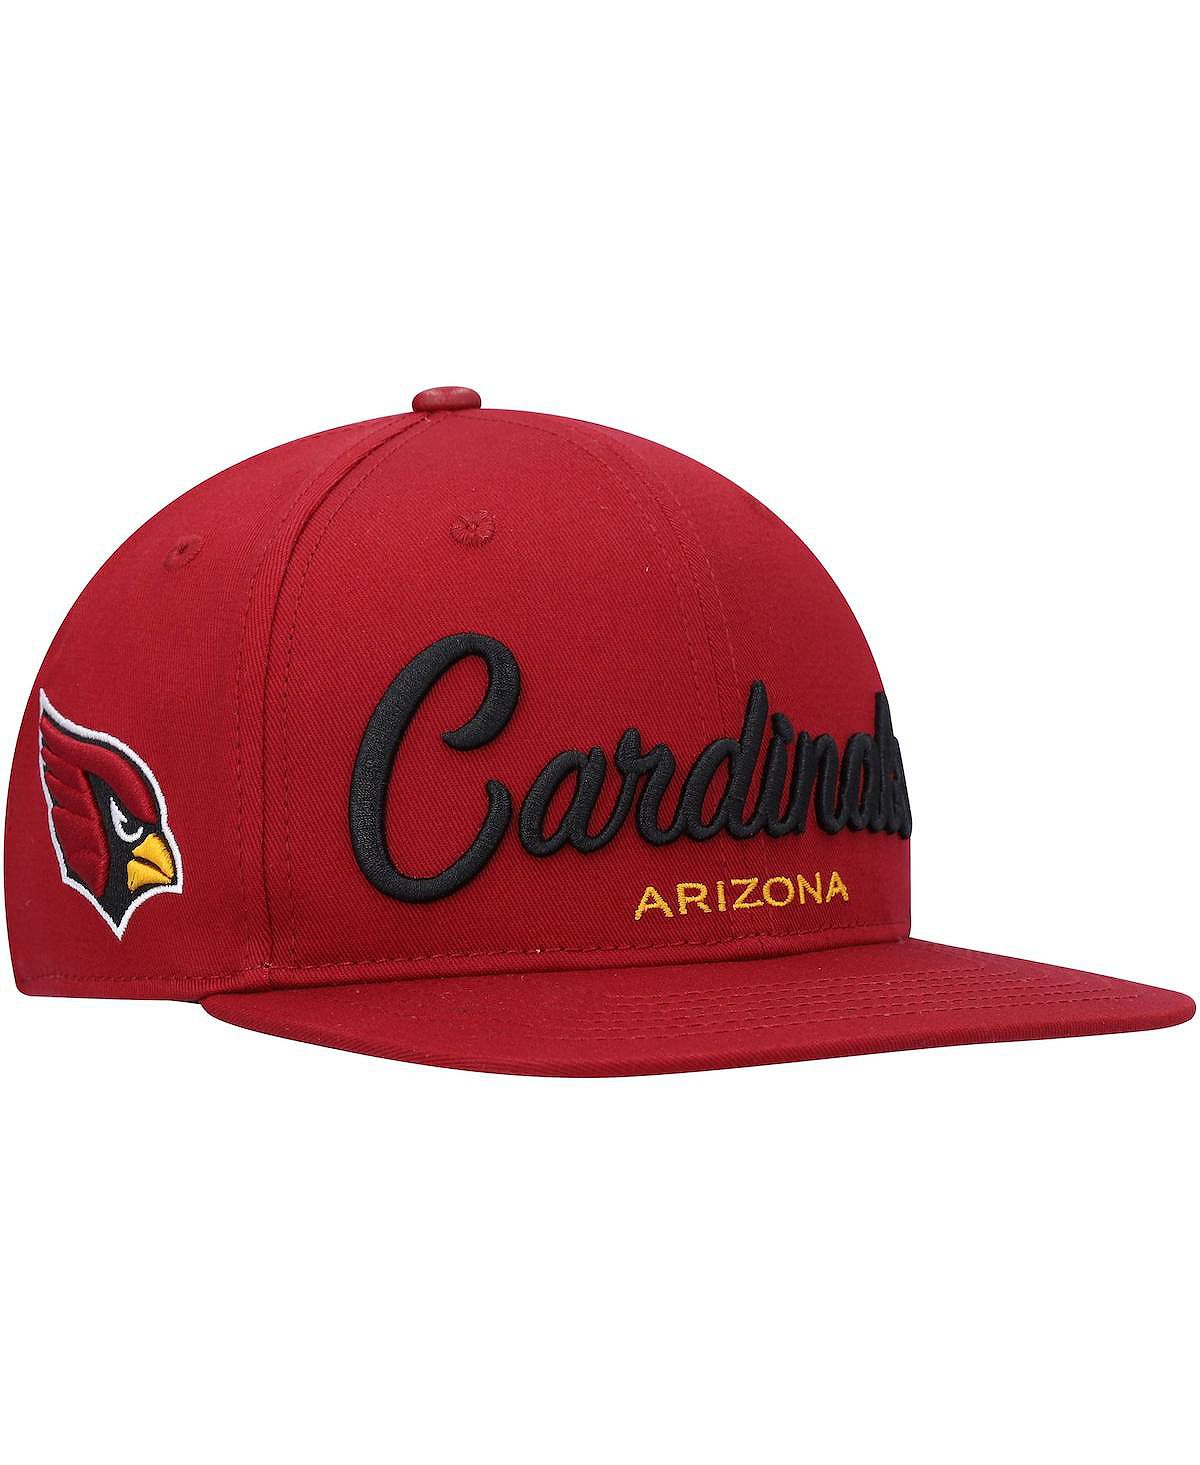 Мужская кепка Snapback Cardinal Arizona Cardinals с надписью и надписью Pro Standard